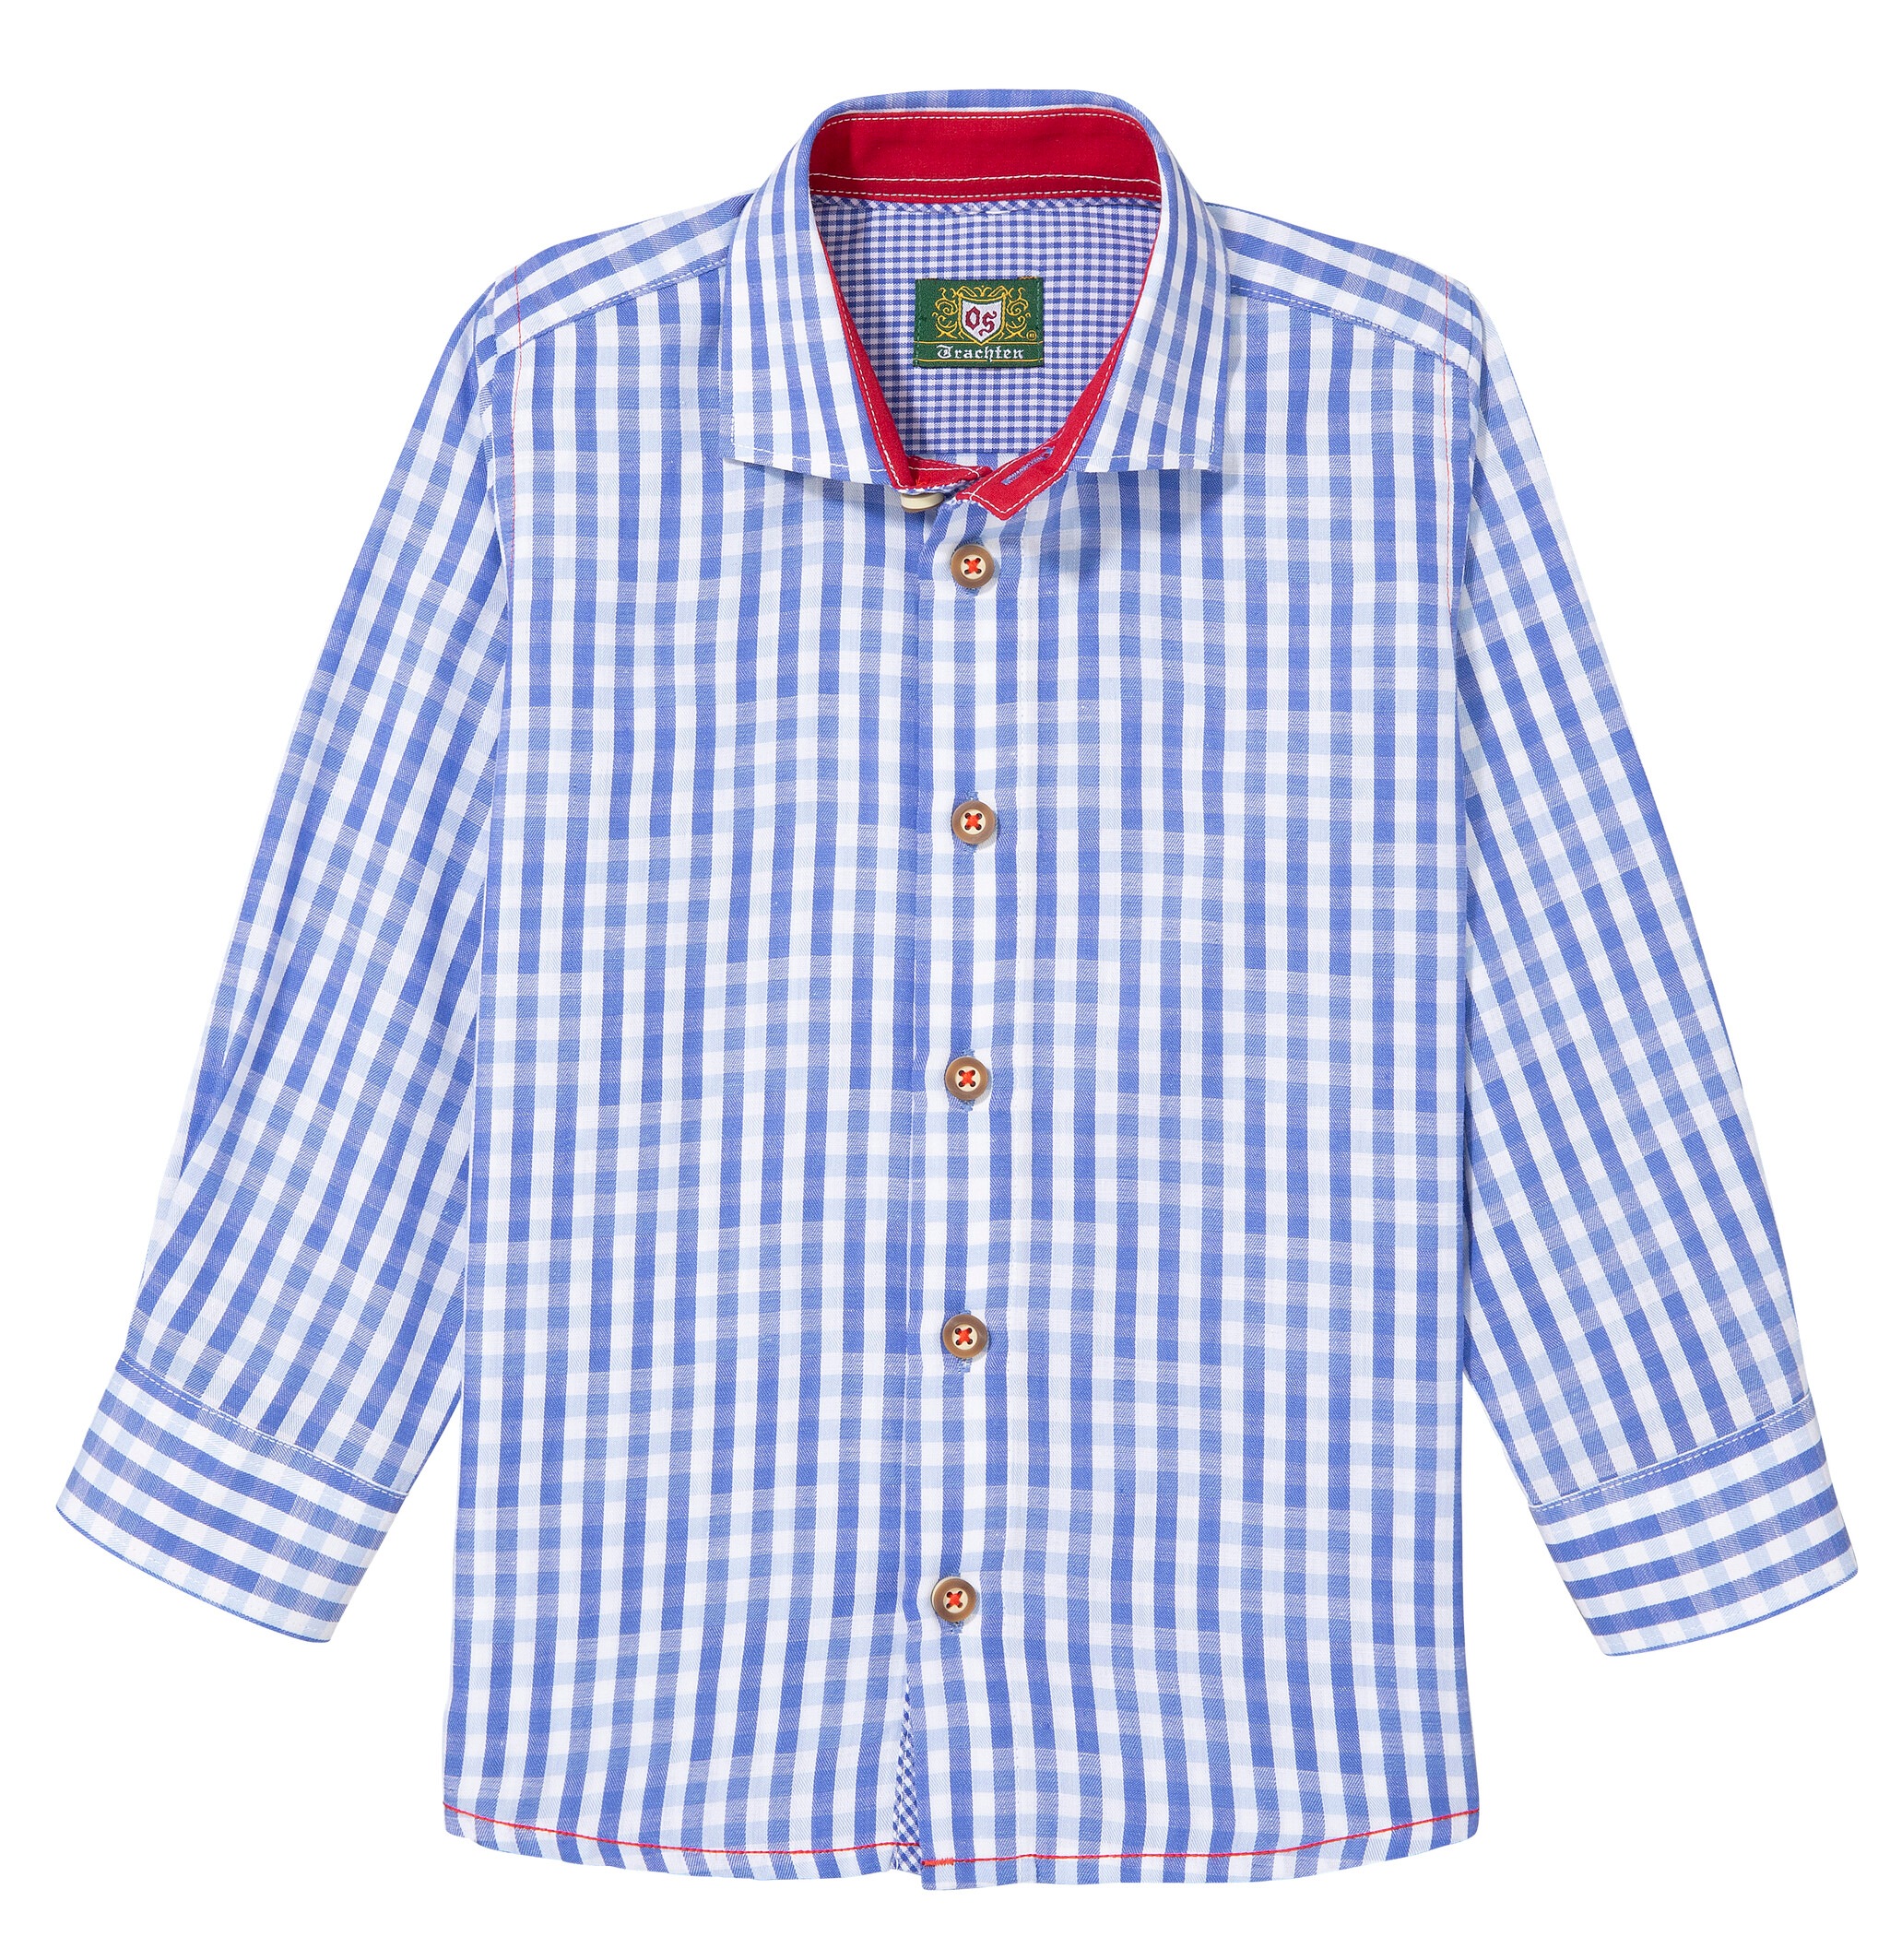 OTTO Kleidung Trachtenmode Trachtenblusen Trachtenhemd »Trachten« 